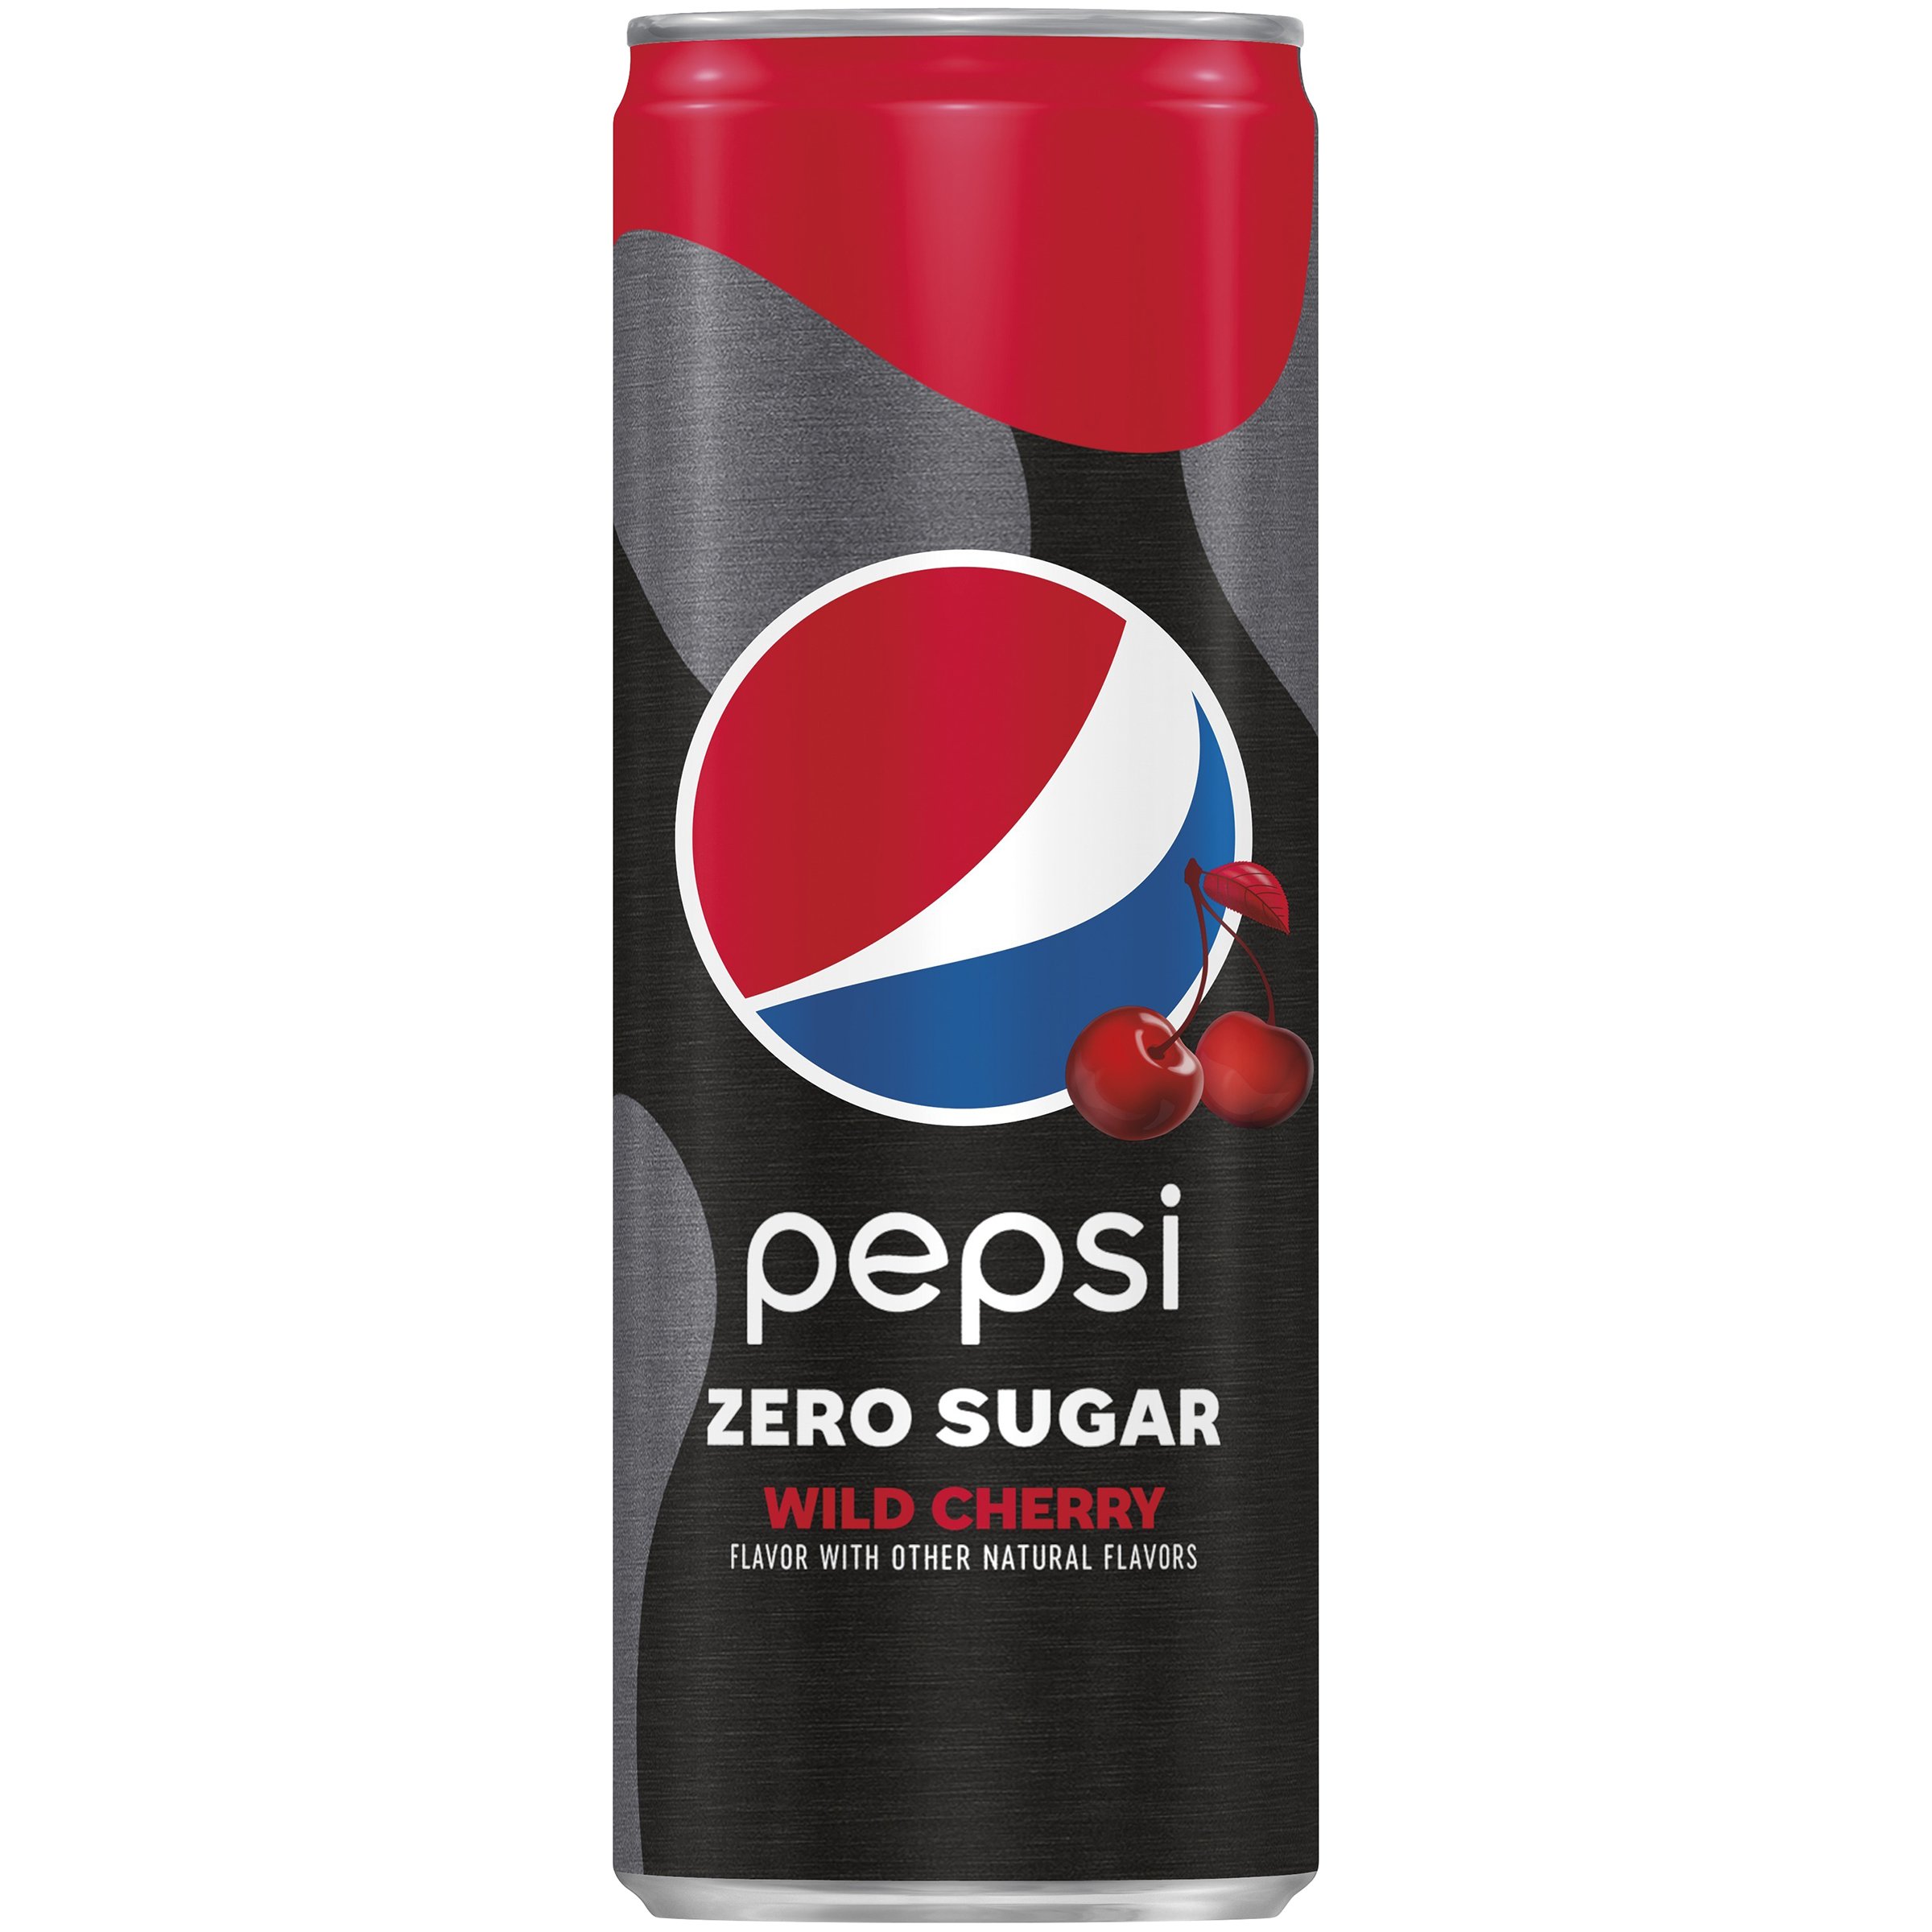 Pepsi Zero Sugar Wild Cherry Cola - Shop Soda at H-E-B